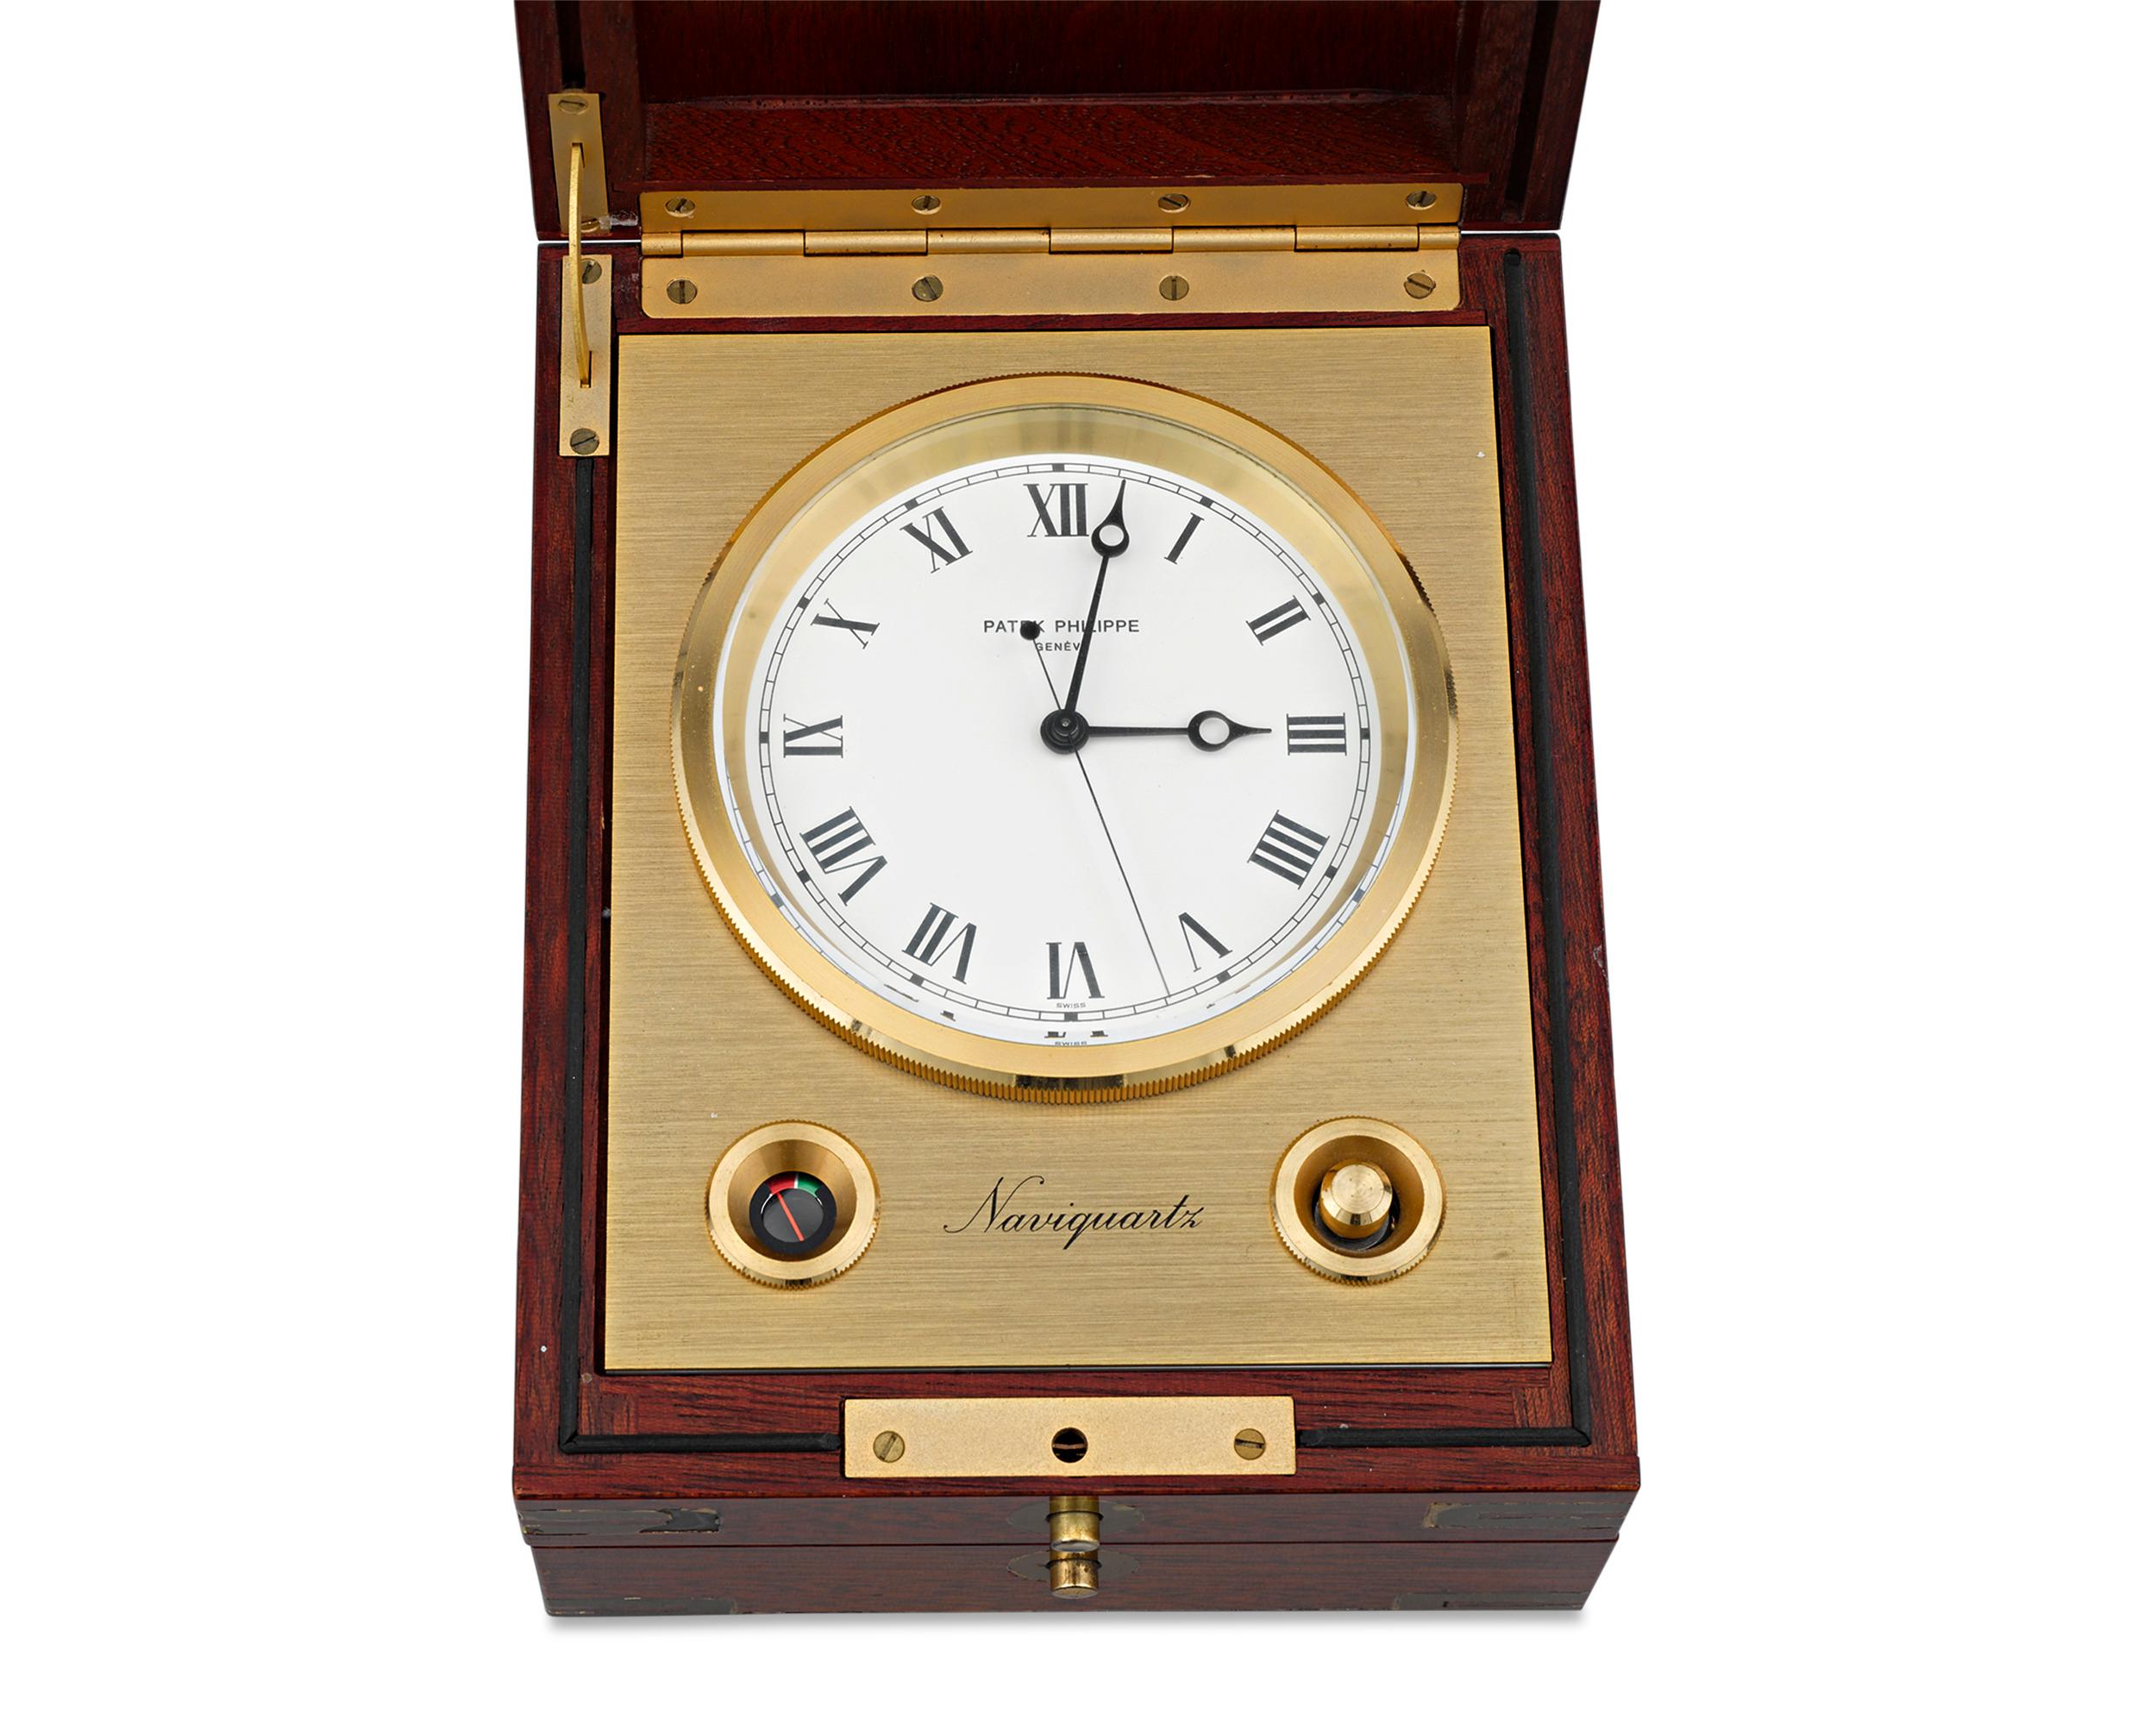 Cette rare horloge de table Naviquartz à chronomètre marin a été fabriquée par l'emblématique maison horlogère genevoise Patek Philippe. L'un des garde-temps les plus complexes et les plus précis jamais fabriqués:: le chronomètre est spécialement